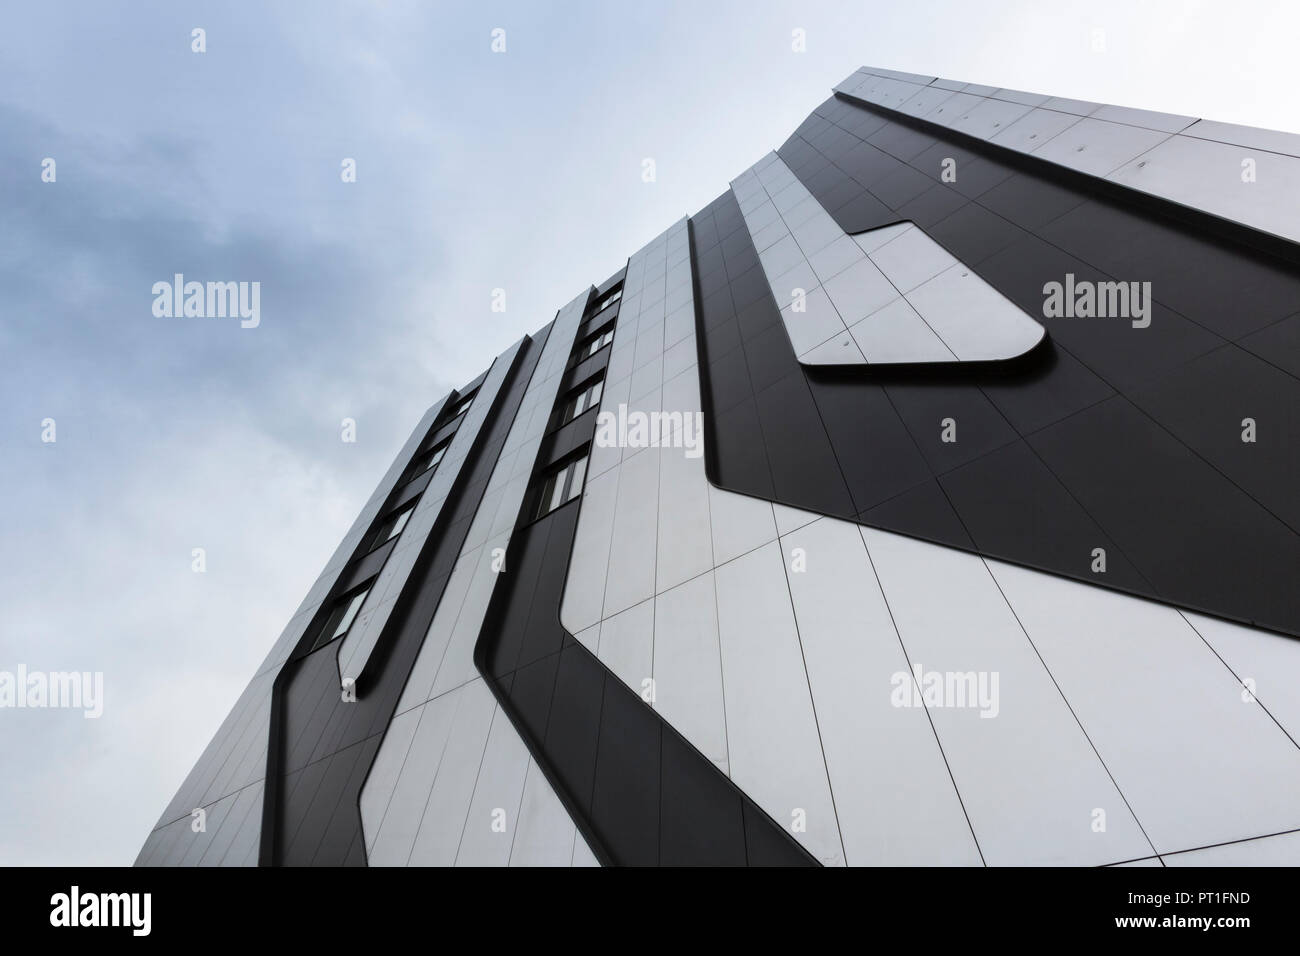 Poland, Krakow, facade of modern hotel Stock Photo